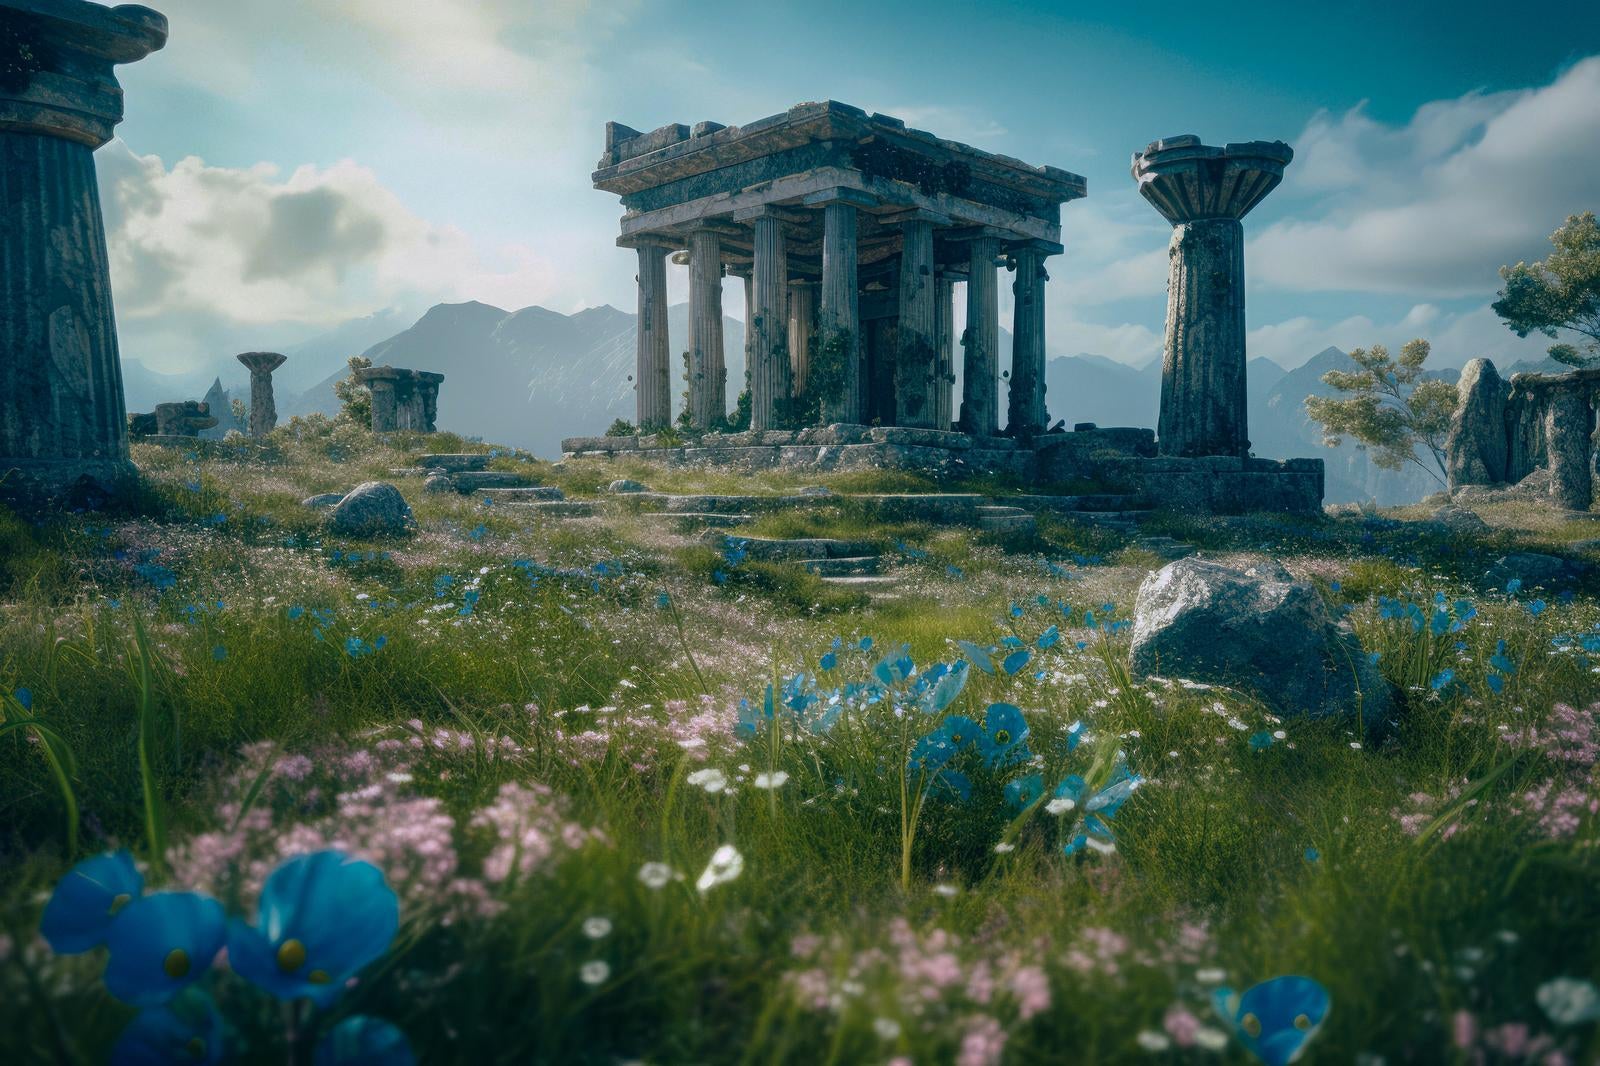 「青いコスモスと古代文明 世界遺産の風景」の写真